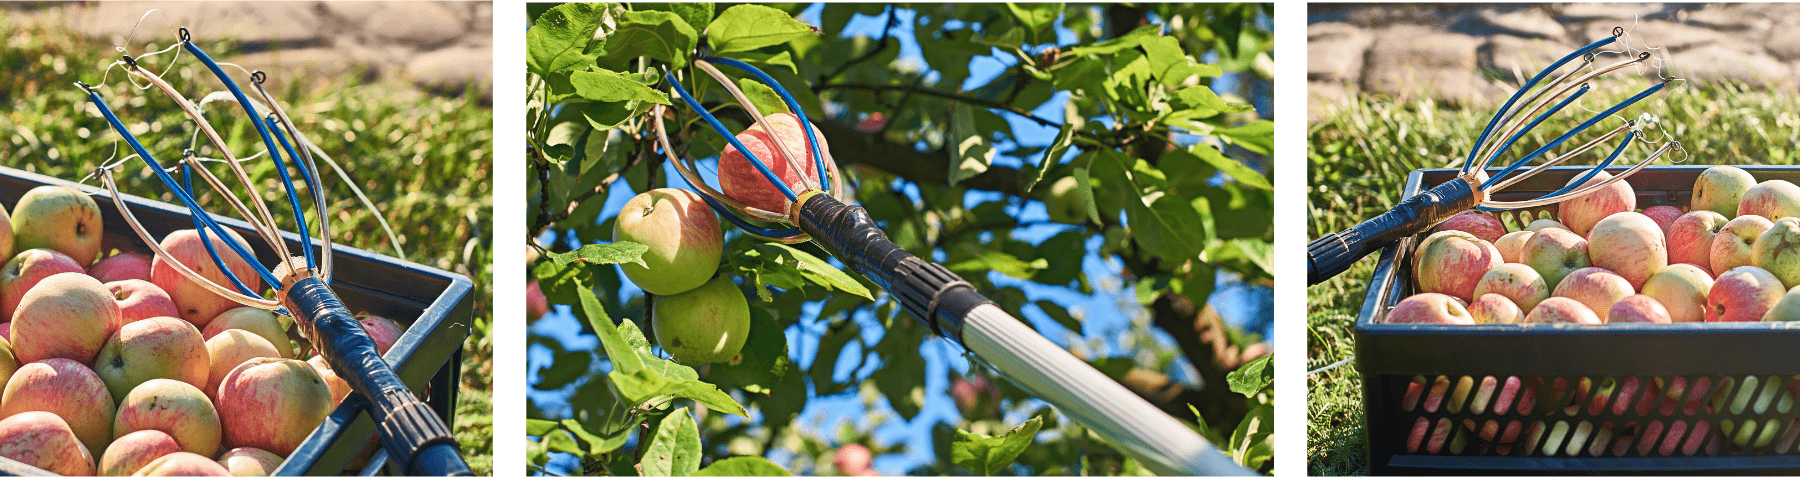 קטיף תפוחים עם מוט טלסקופי לקטיפת פירות